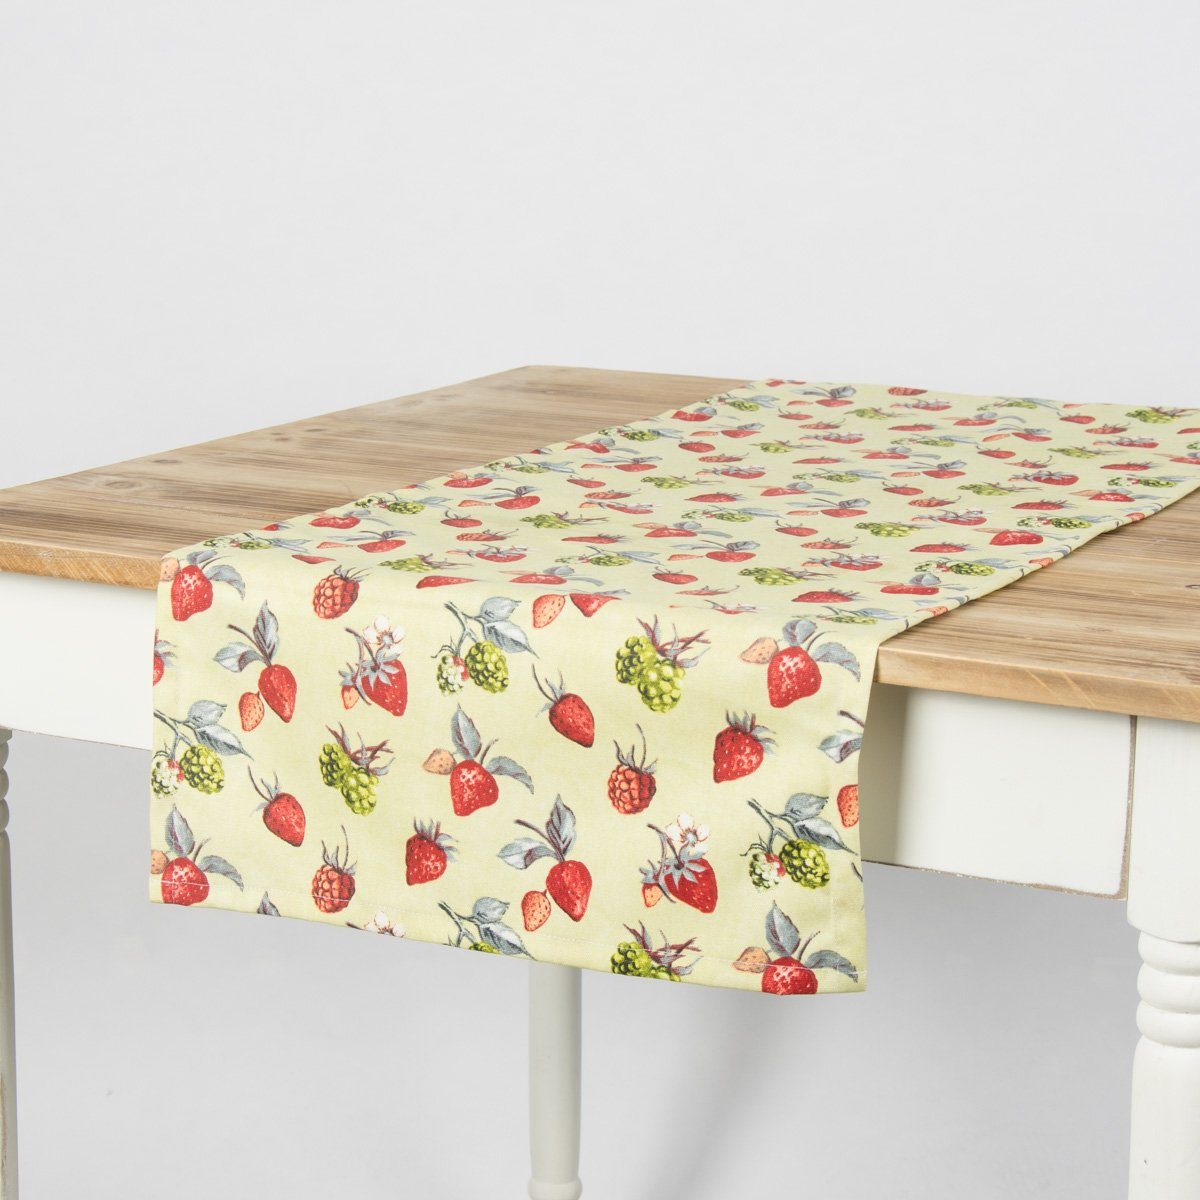 SCHÖNER LEBEN. Tischläufer Schöner Leben Tischläufer Erdbeeren Brombeeren grün rot 40x160cm